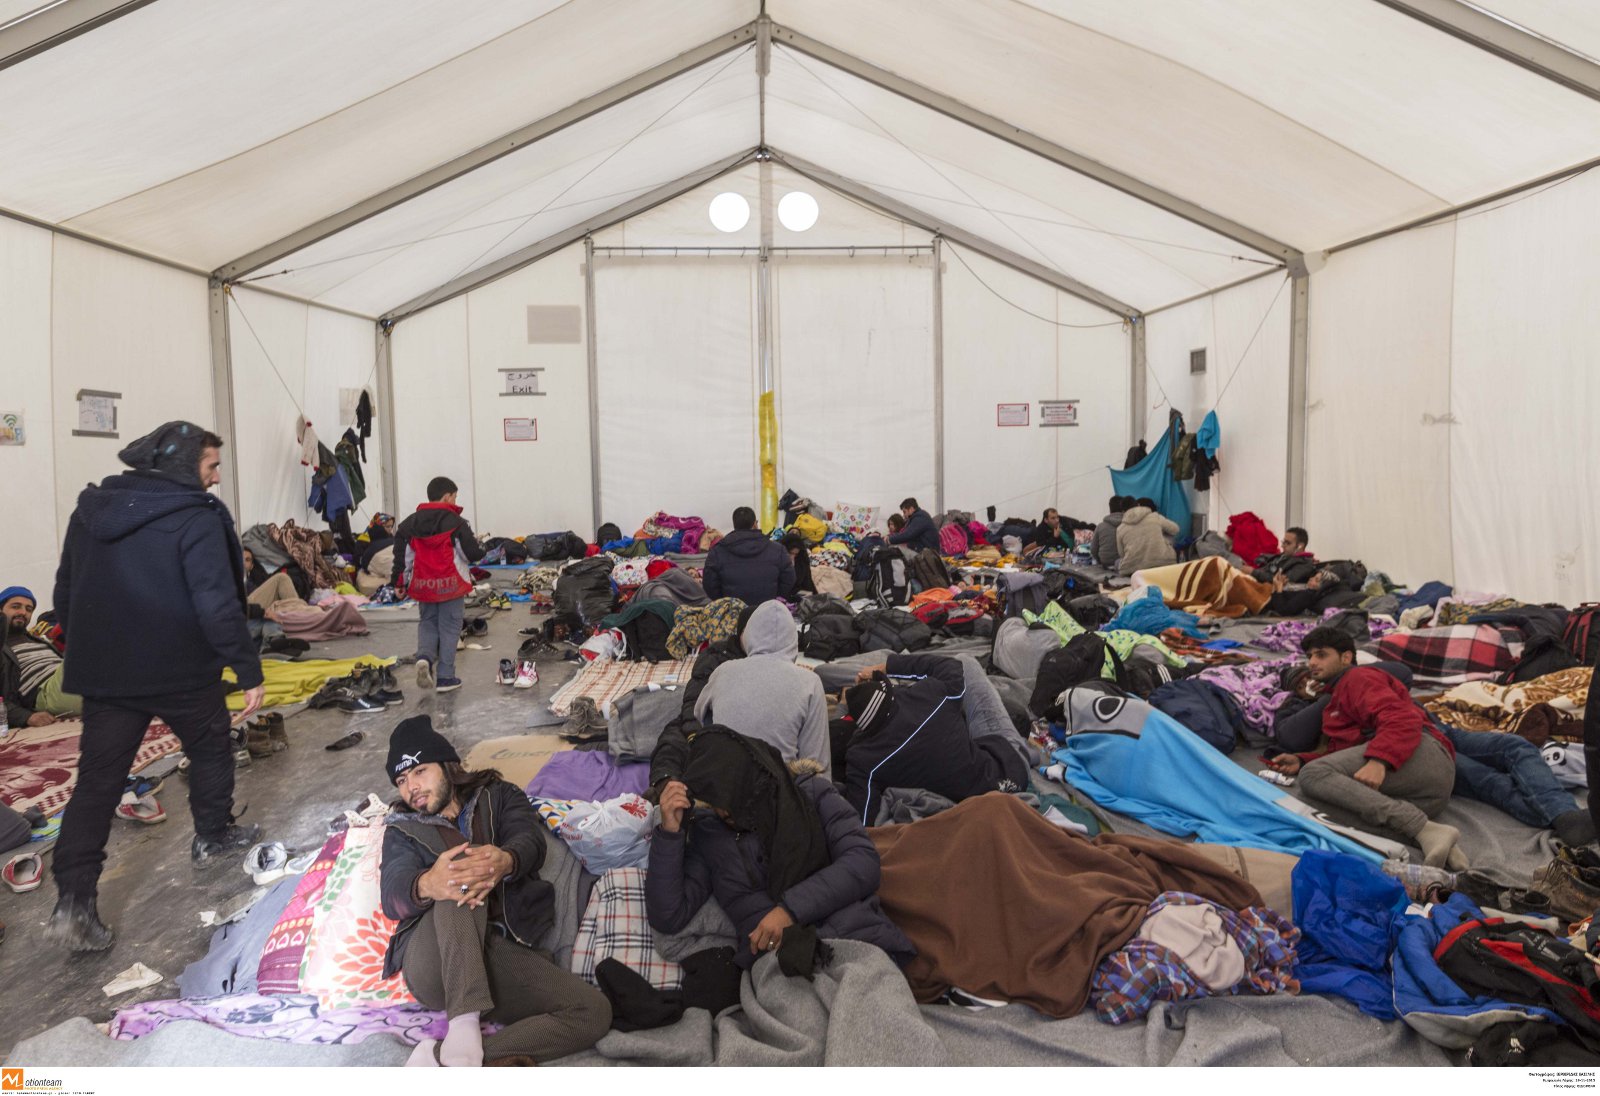 Καταυλισμός παράνομων μεταναστών η Ελλάδα: Ψάχνουν στρατόπεδα των ΕΔ  για νέα “hot spot”